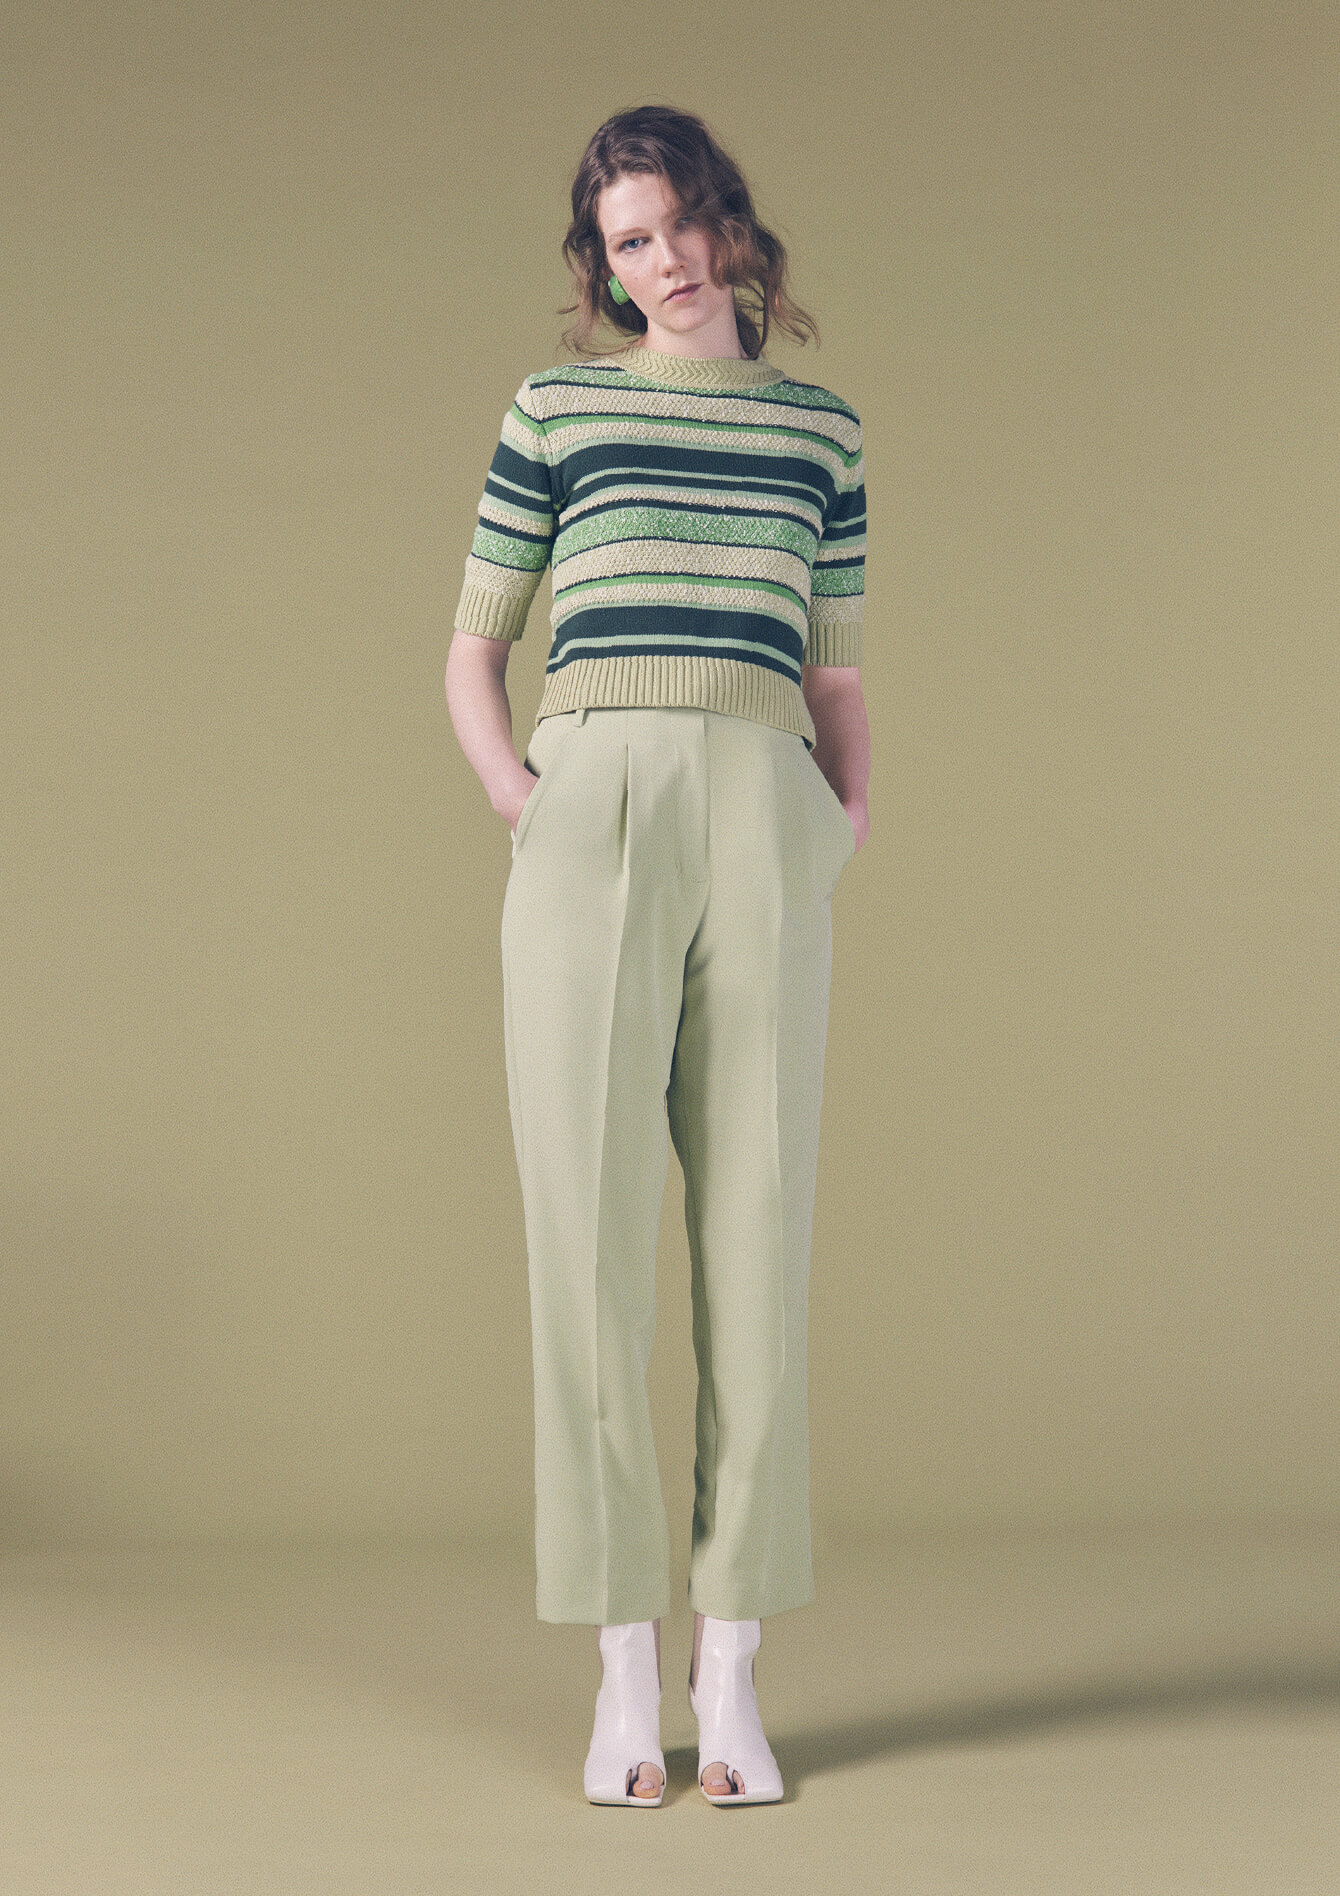 緑横線のトップスと薄い緑のパンツと白い靴を入ってズボンのポケットに両手を入れて前を見て立っている女性モデルの画像